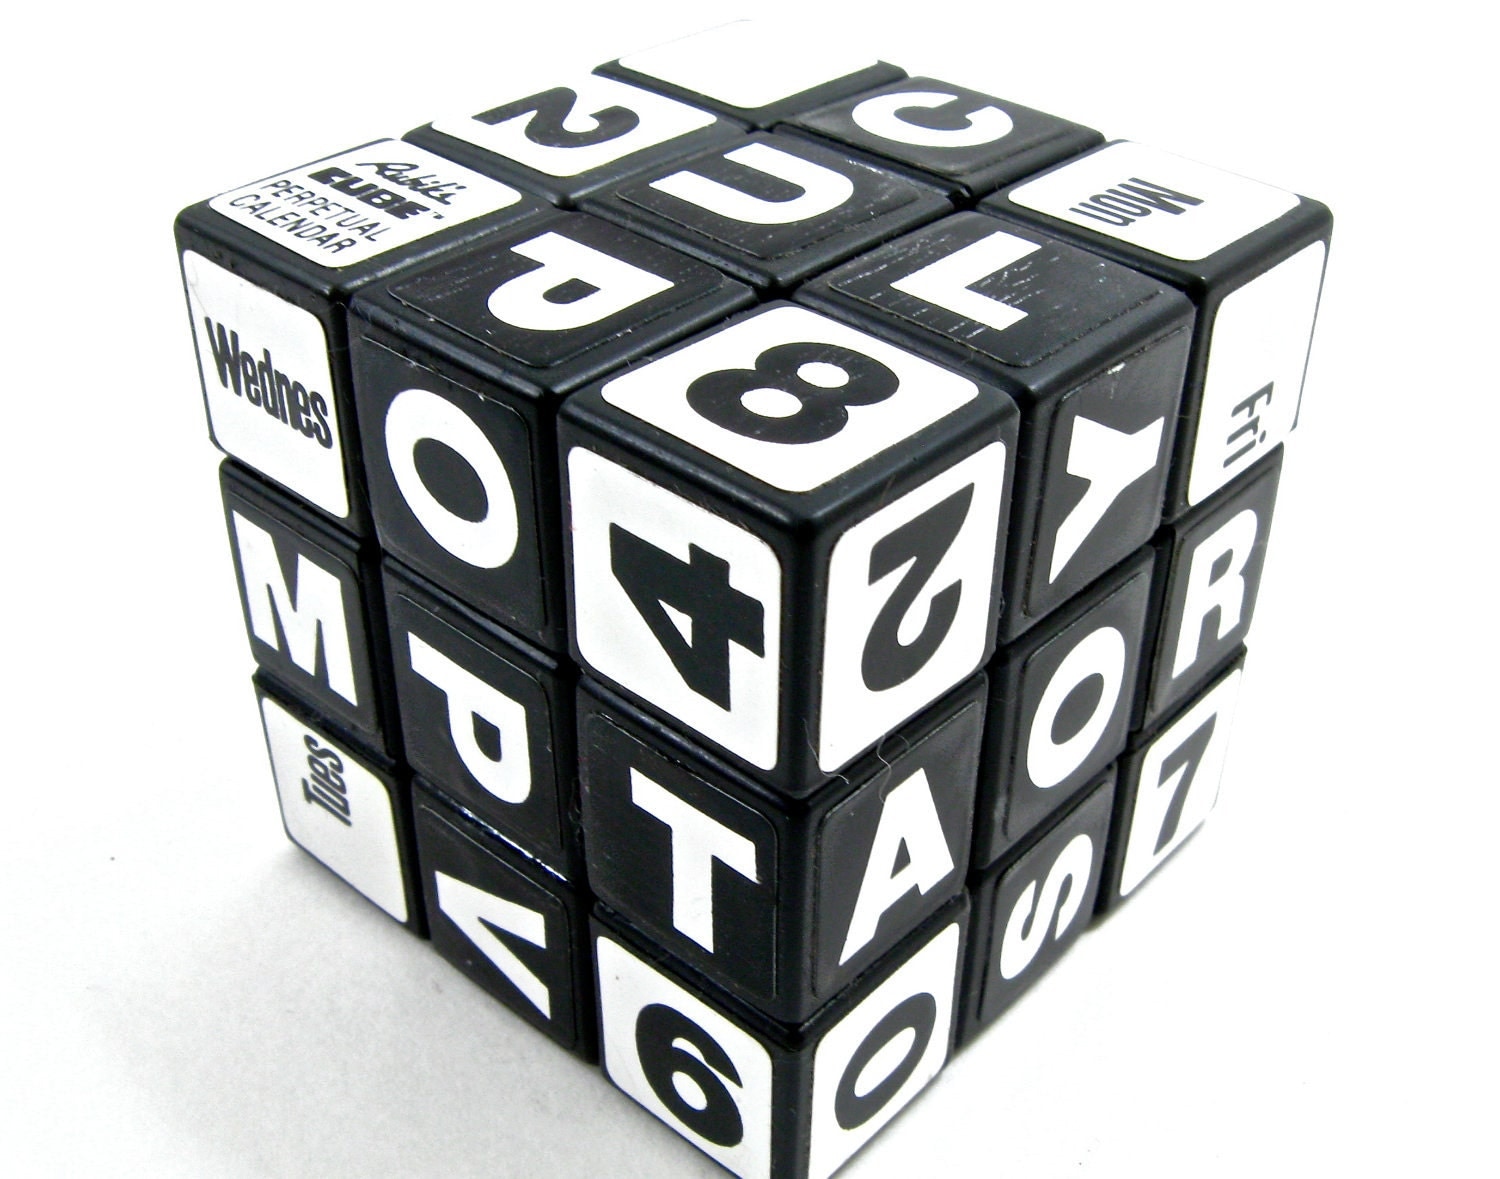 Rubik's Cube Perpetual Calendar